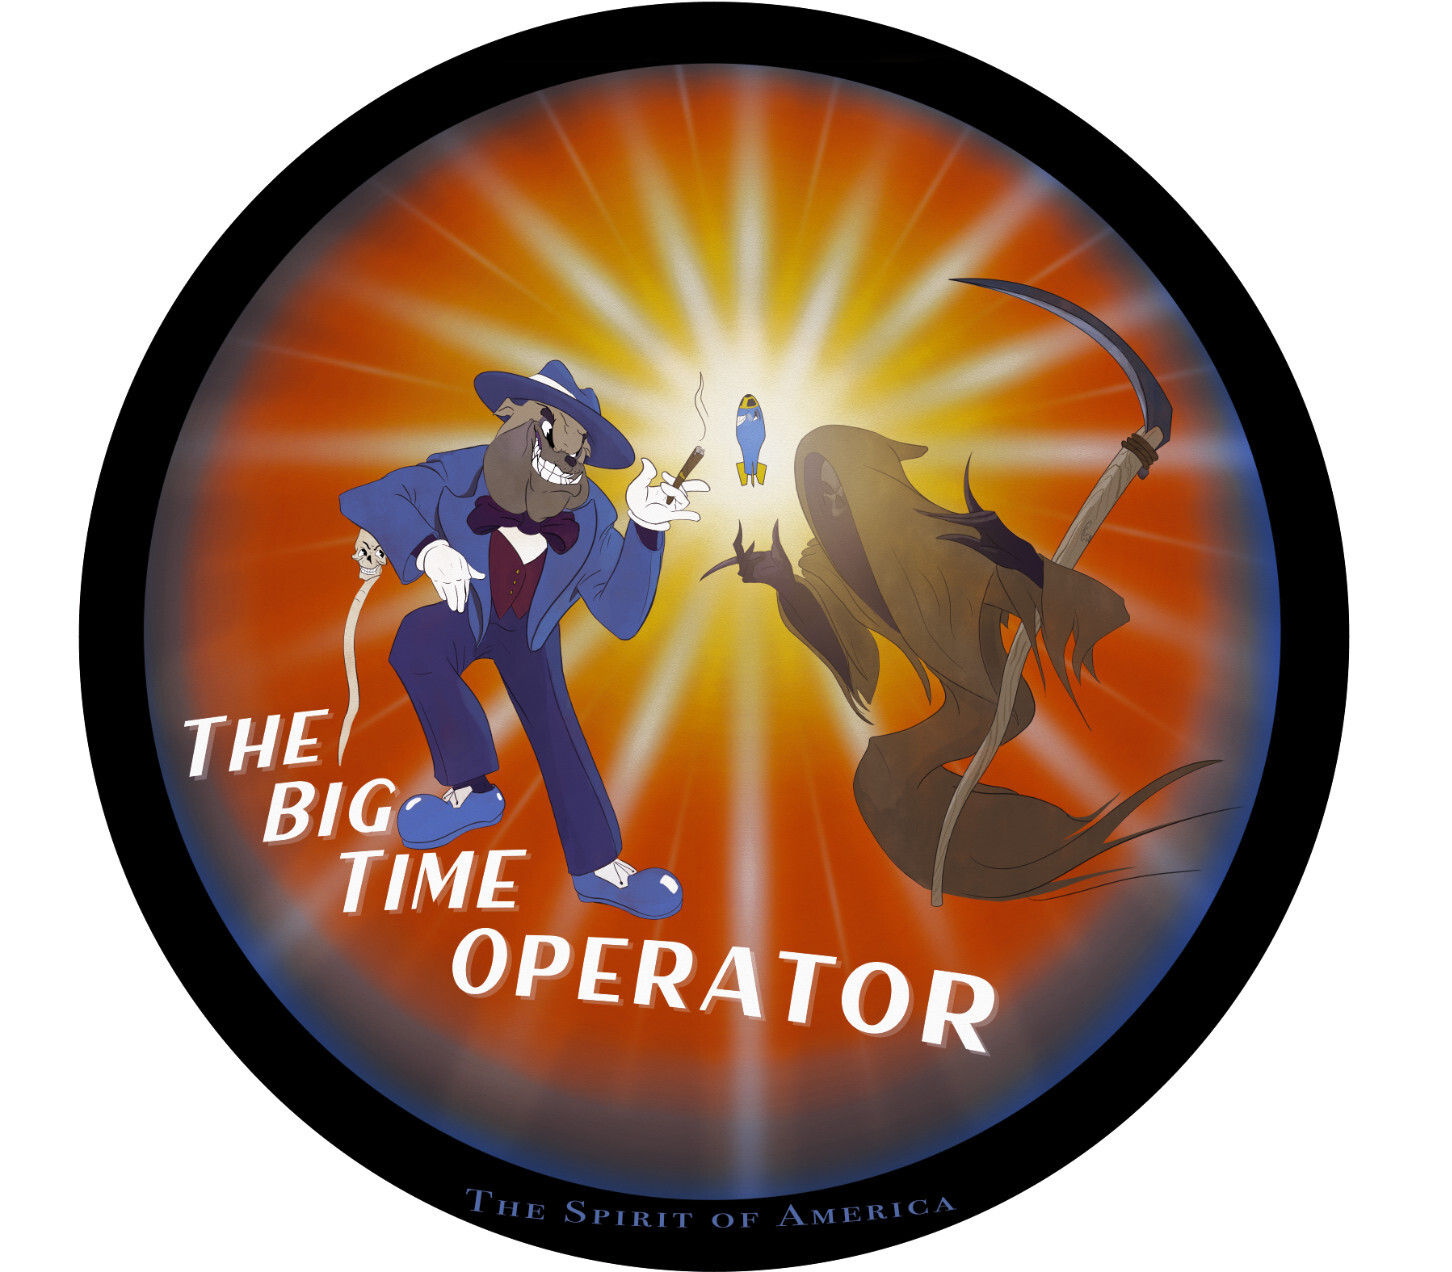 The Big Time Operator